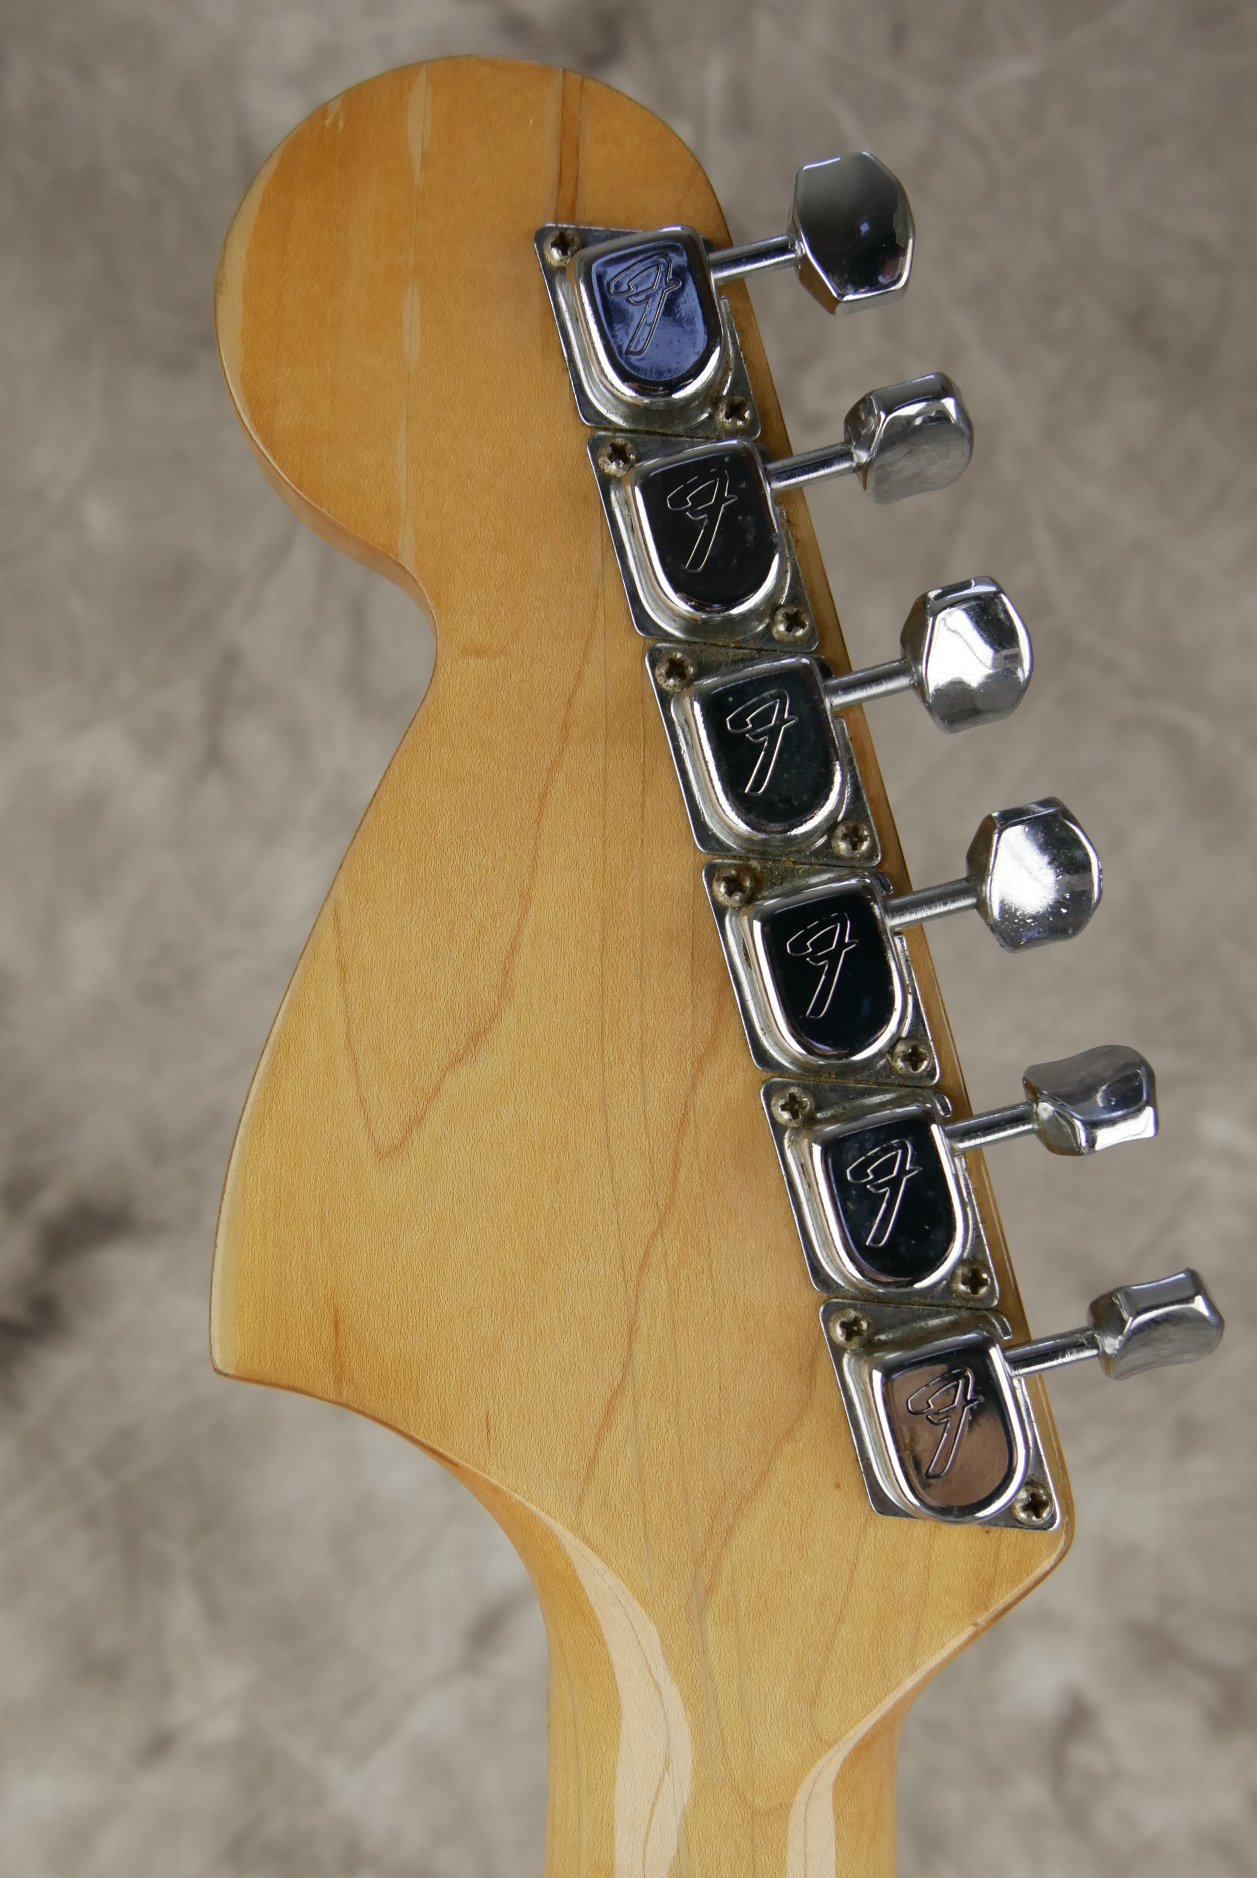 Fender_Stratocaster-1970_sunburst-tremolo-010.JPG